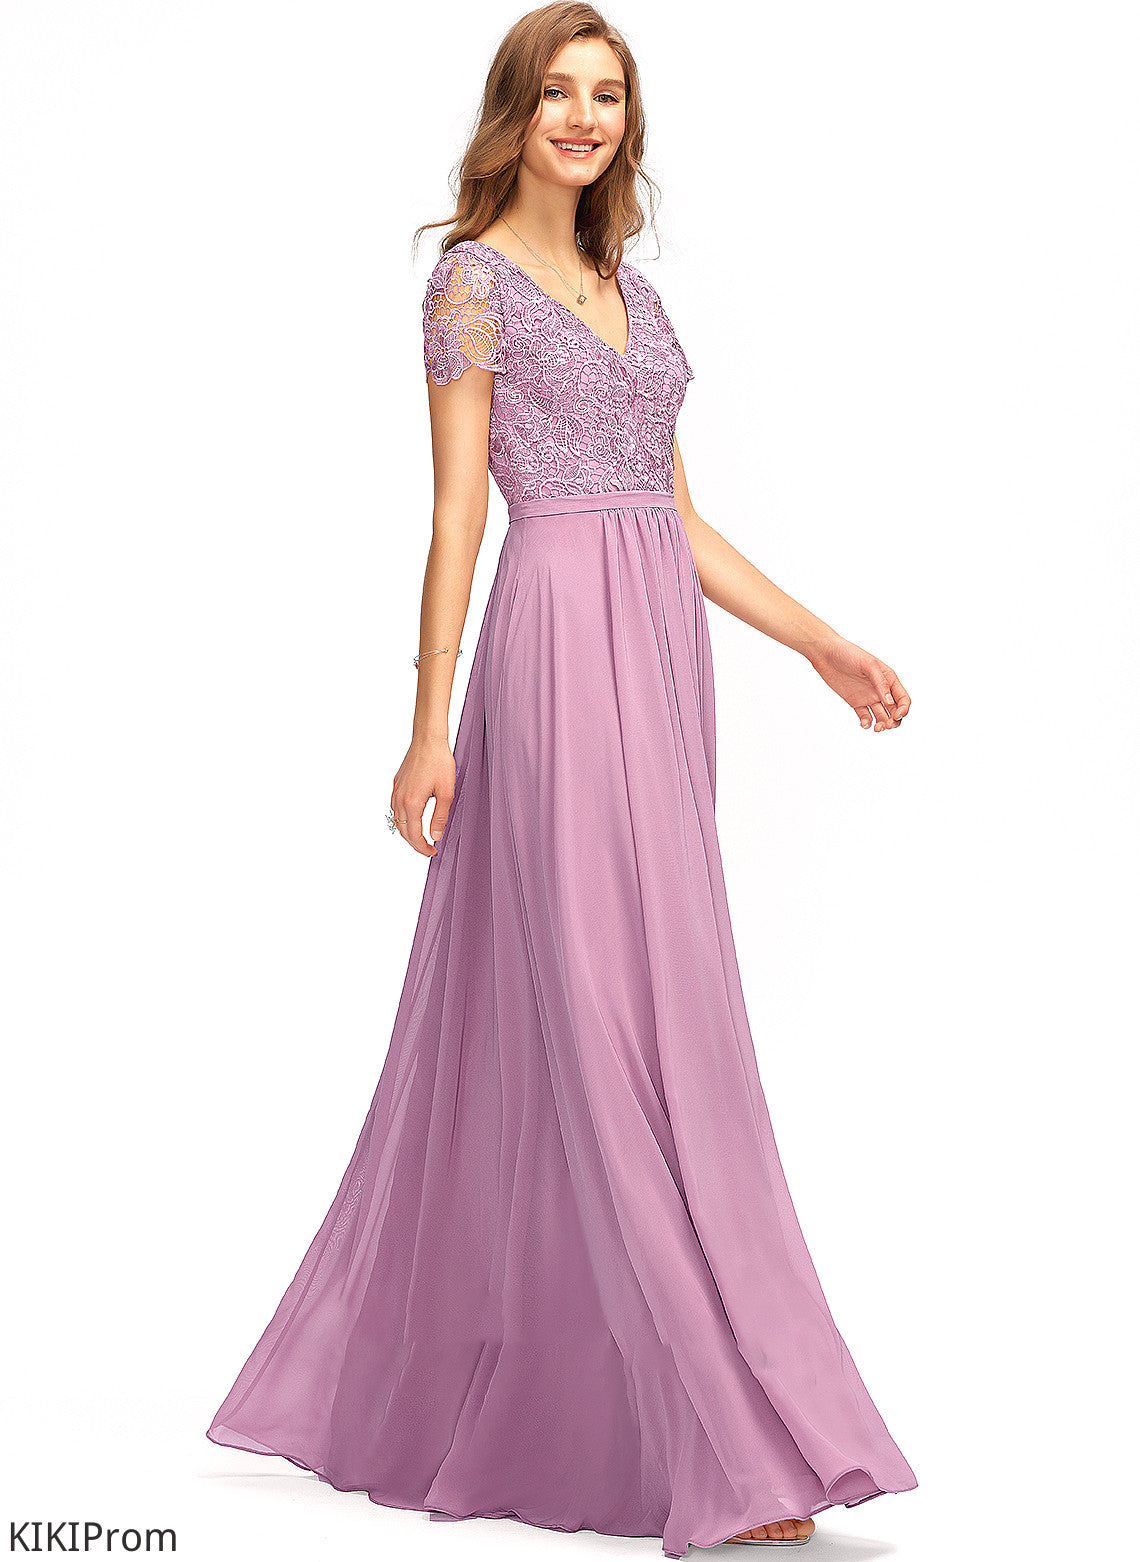 Silhouette A-Line Length V-neck Neckline SplitFront Fabric Embellishment Floor-Length Melanie Bridesmaid Dresses